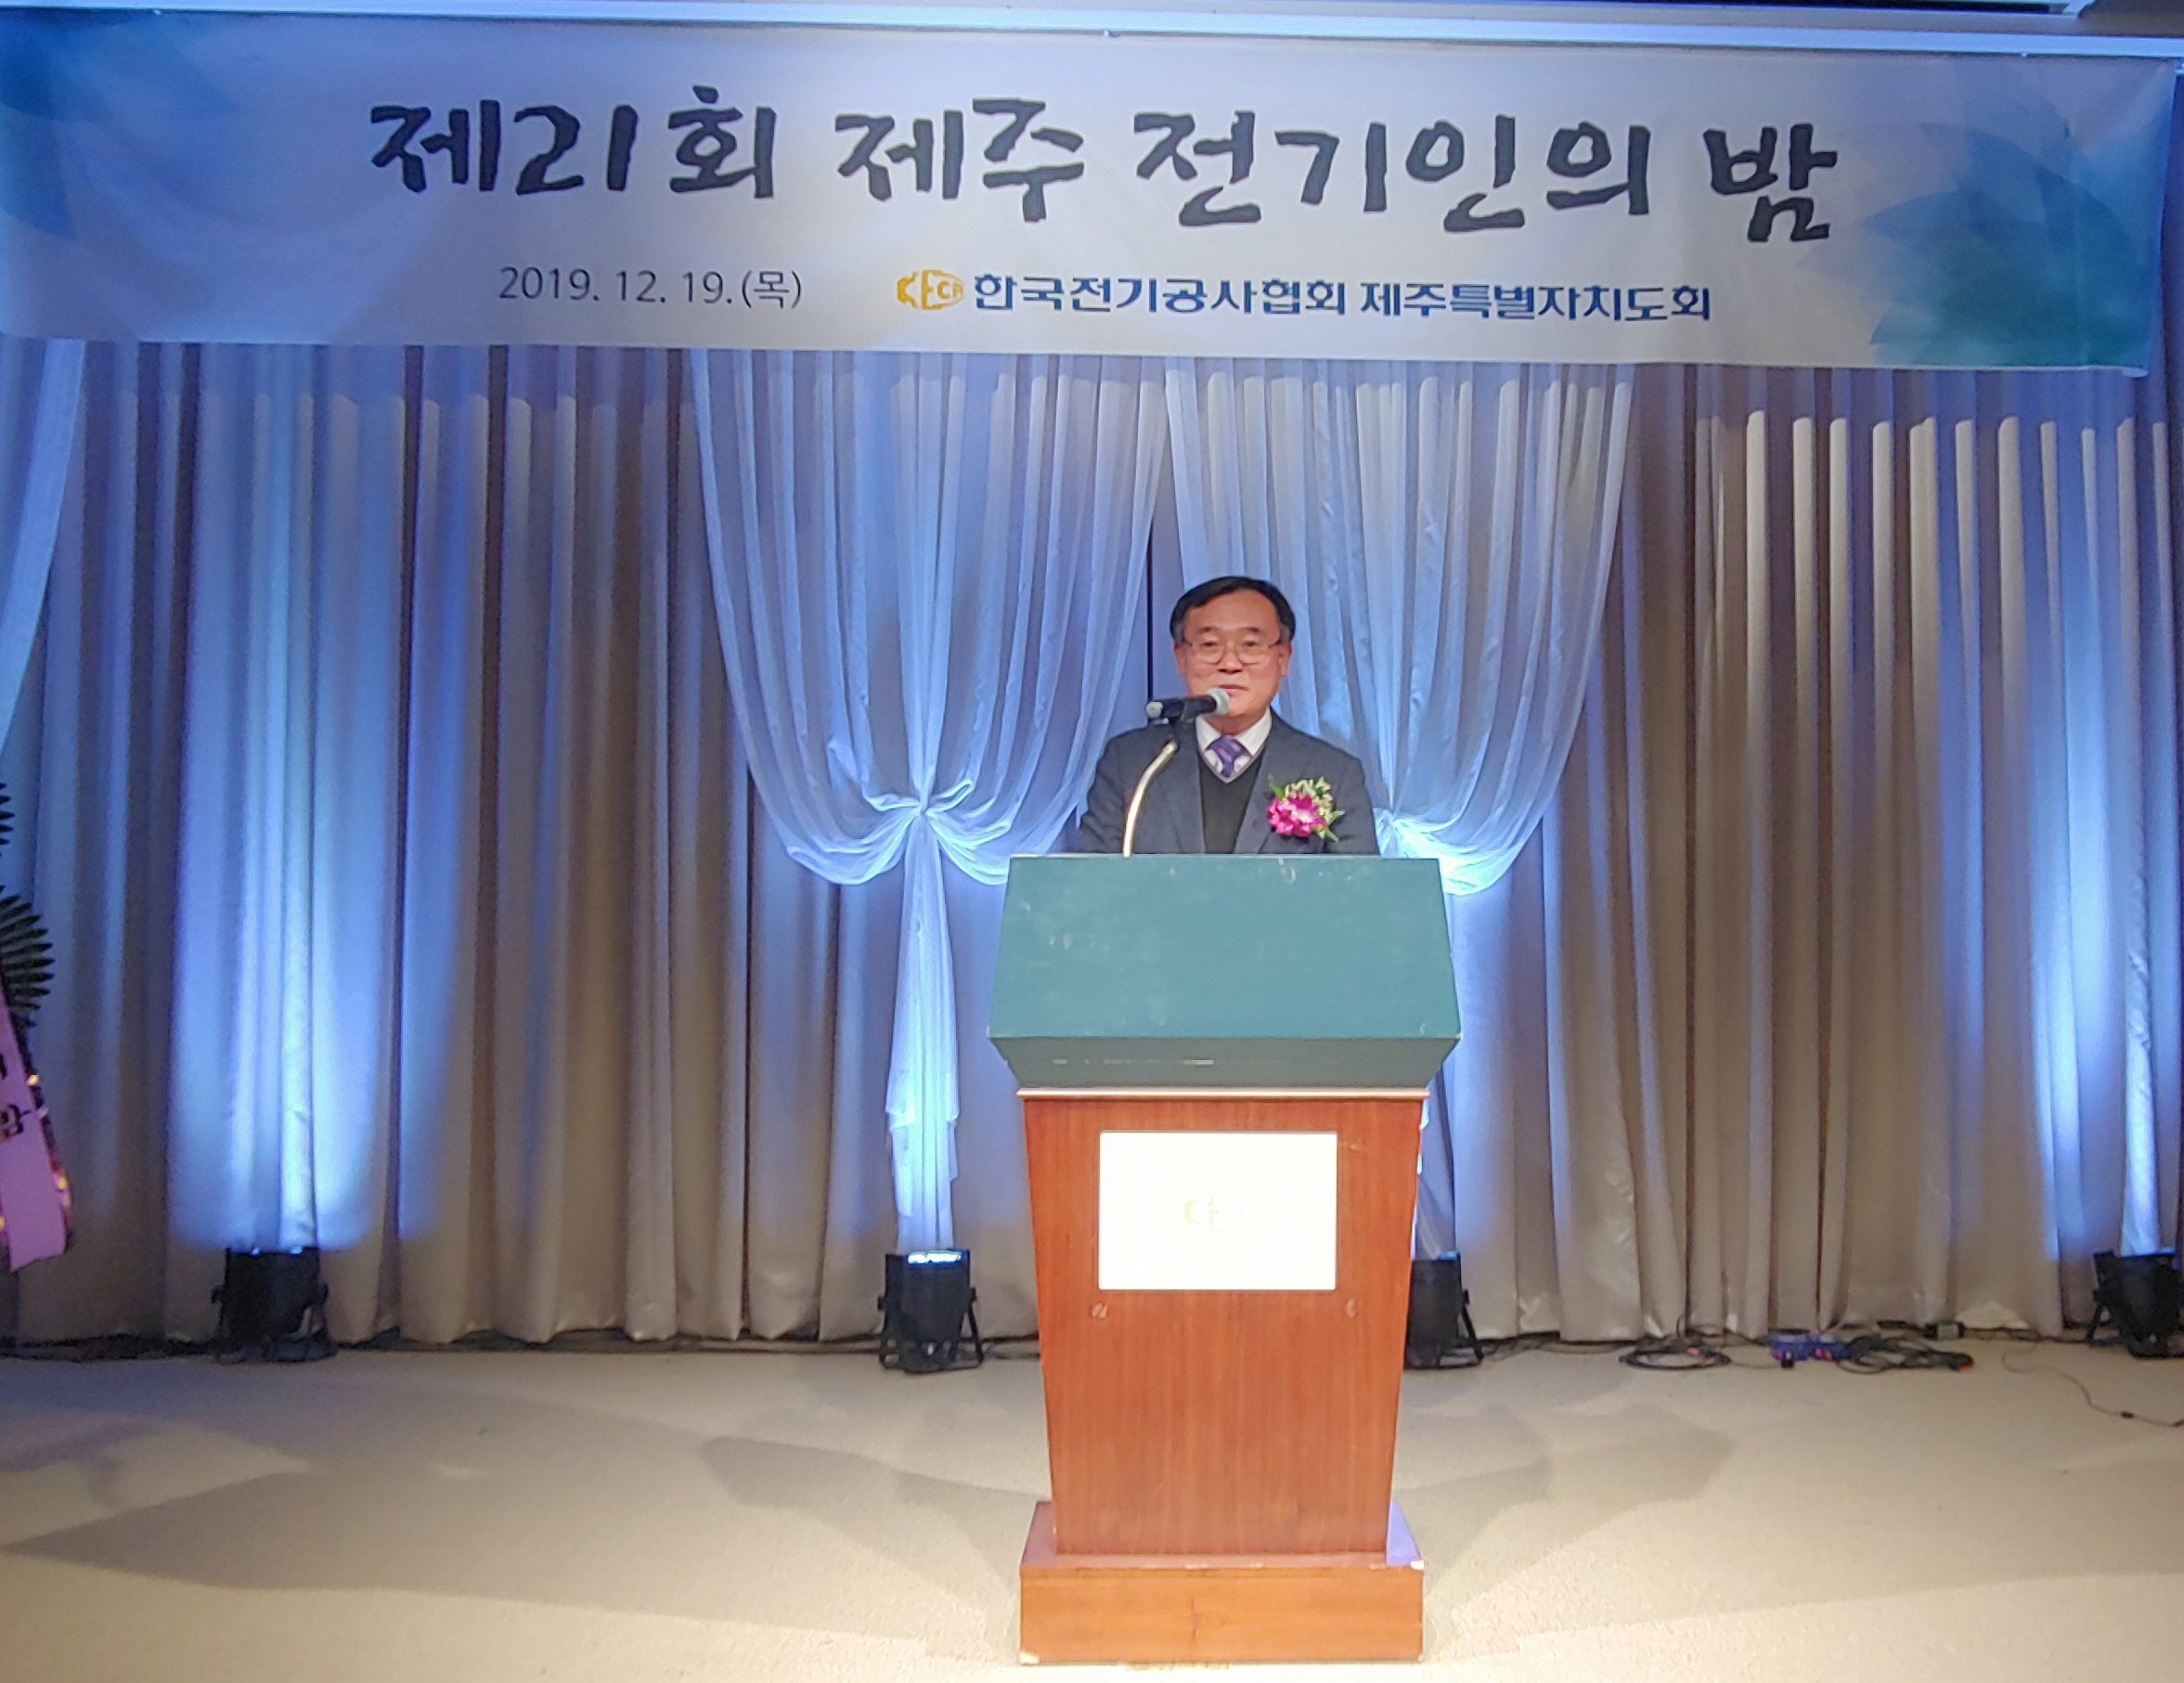 박형환 한전 제주본부장이 19일 열린 ‘2019 제주 전기인의 밤’에서 축사를 전하고 있다.